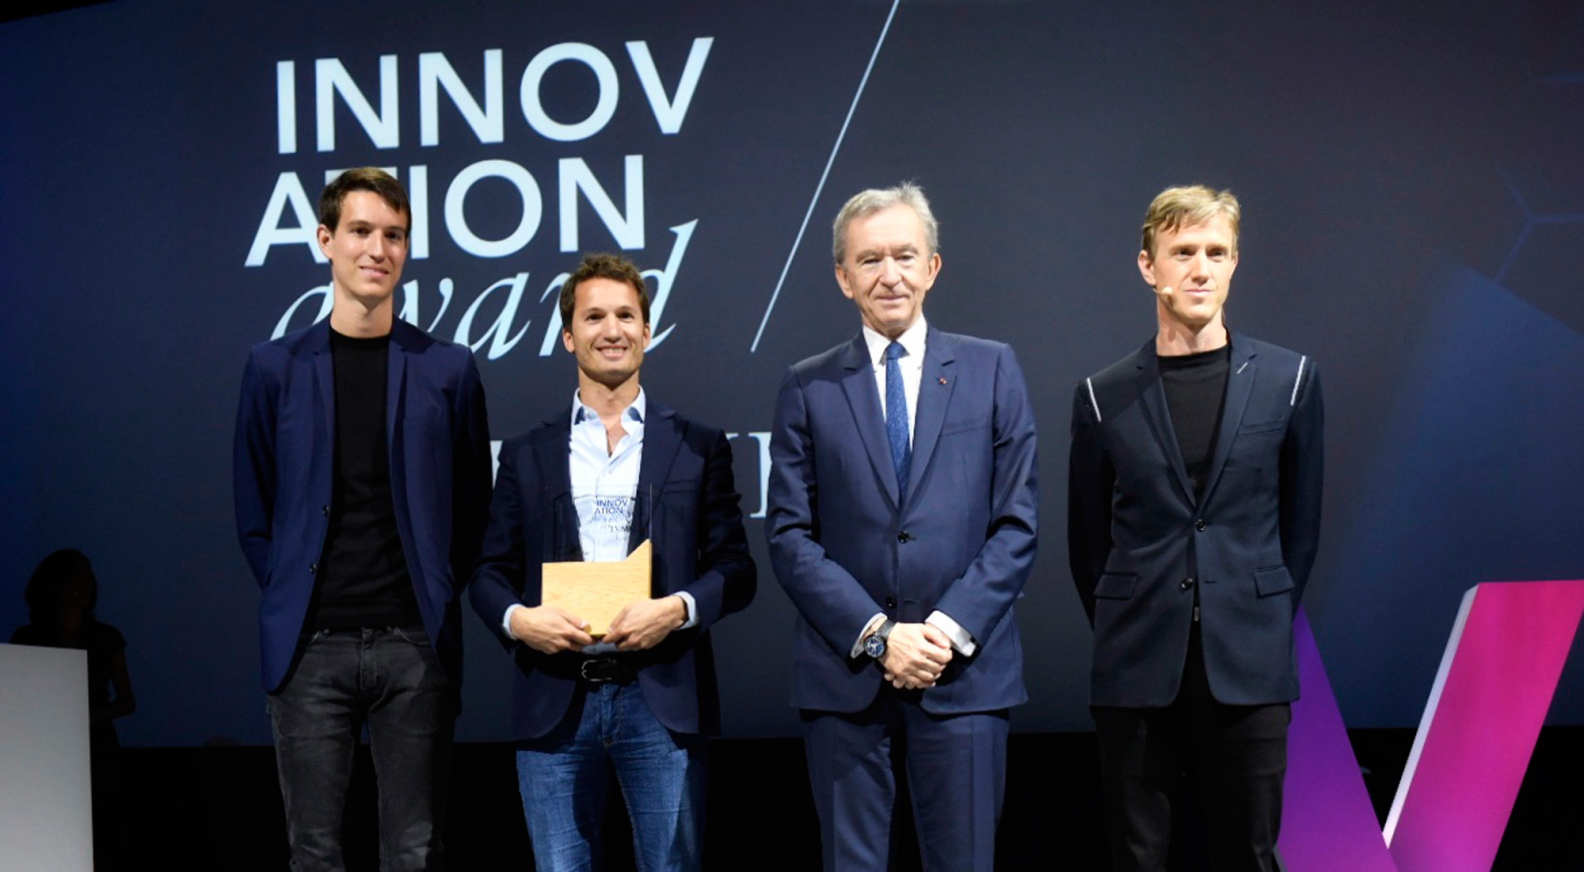 Viva Technology 2018: spotlight on innovations from LVMH Maisons - LVMH